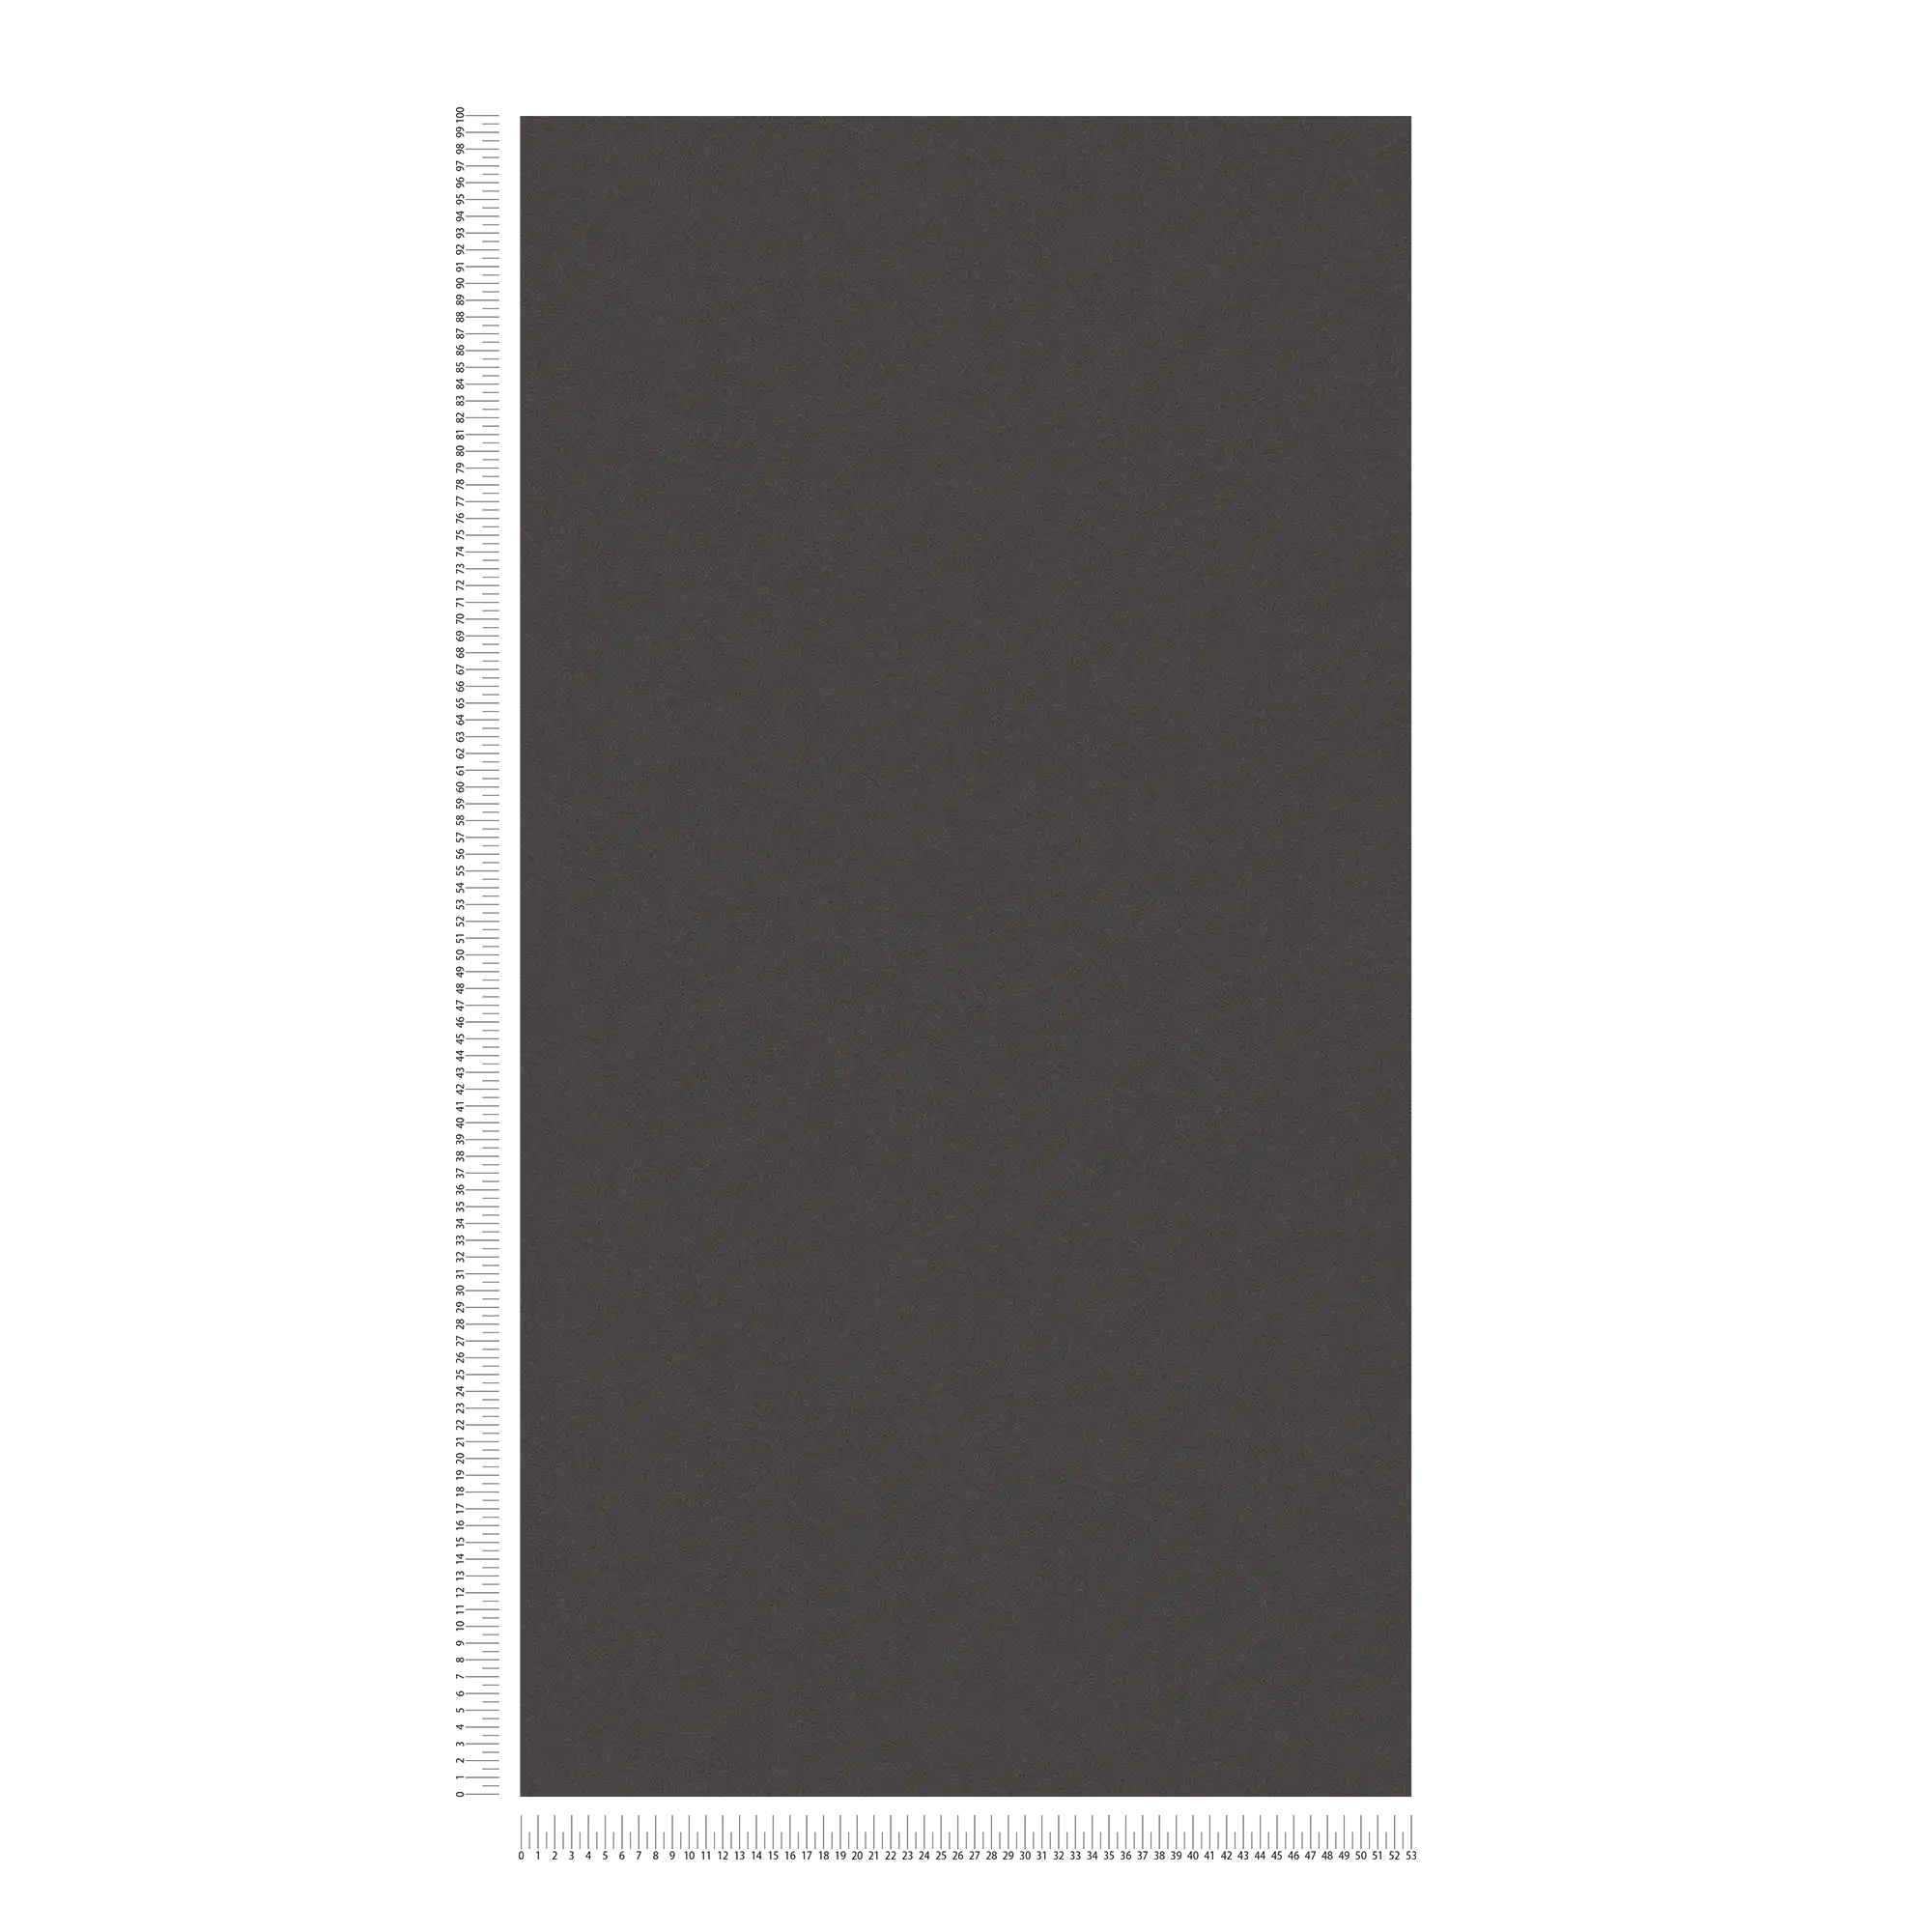             Papel pintado liso con estructura de superficie discreta - negro
        